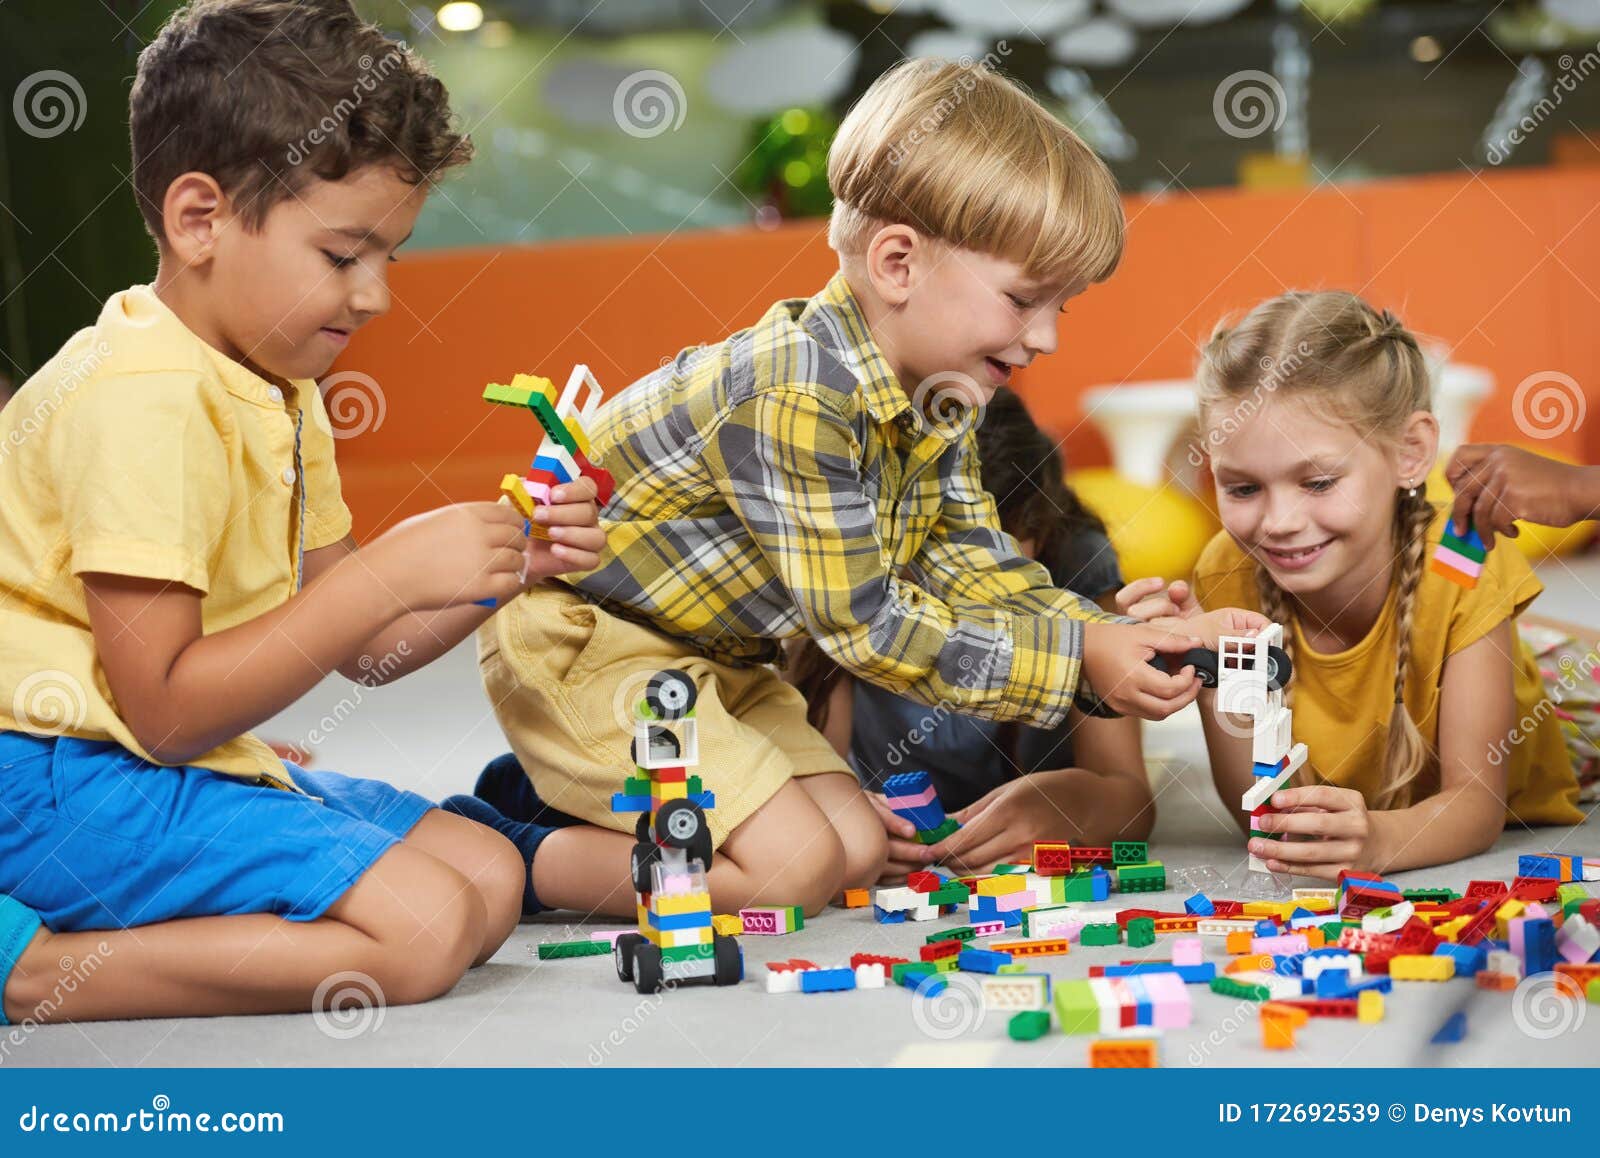 μικρά παιδιά που παίζουν με παιχνίδια κατασκευών στο πάτωμα. Στοκ Εικόνα -  εικόνα από childcare, lifestyle: 172692539